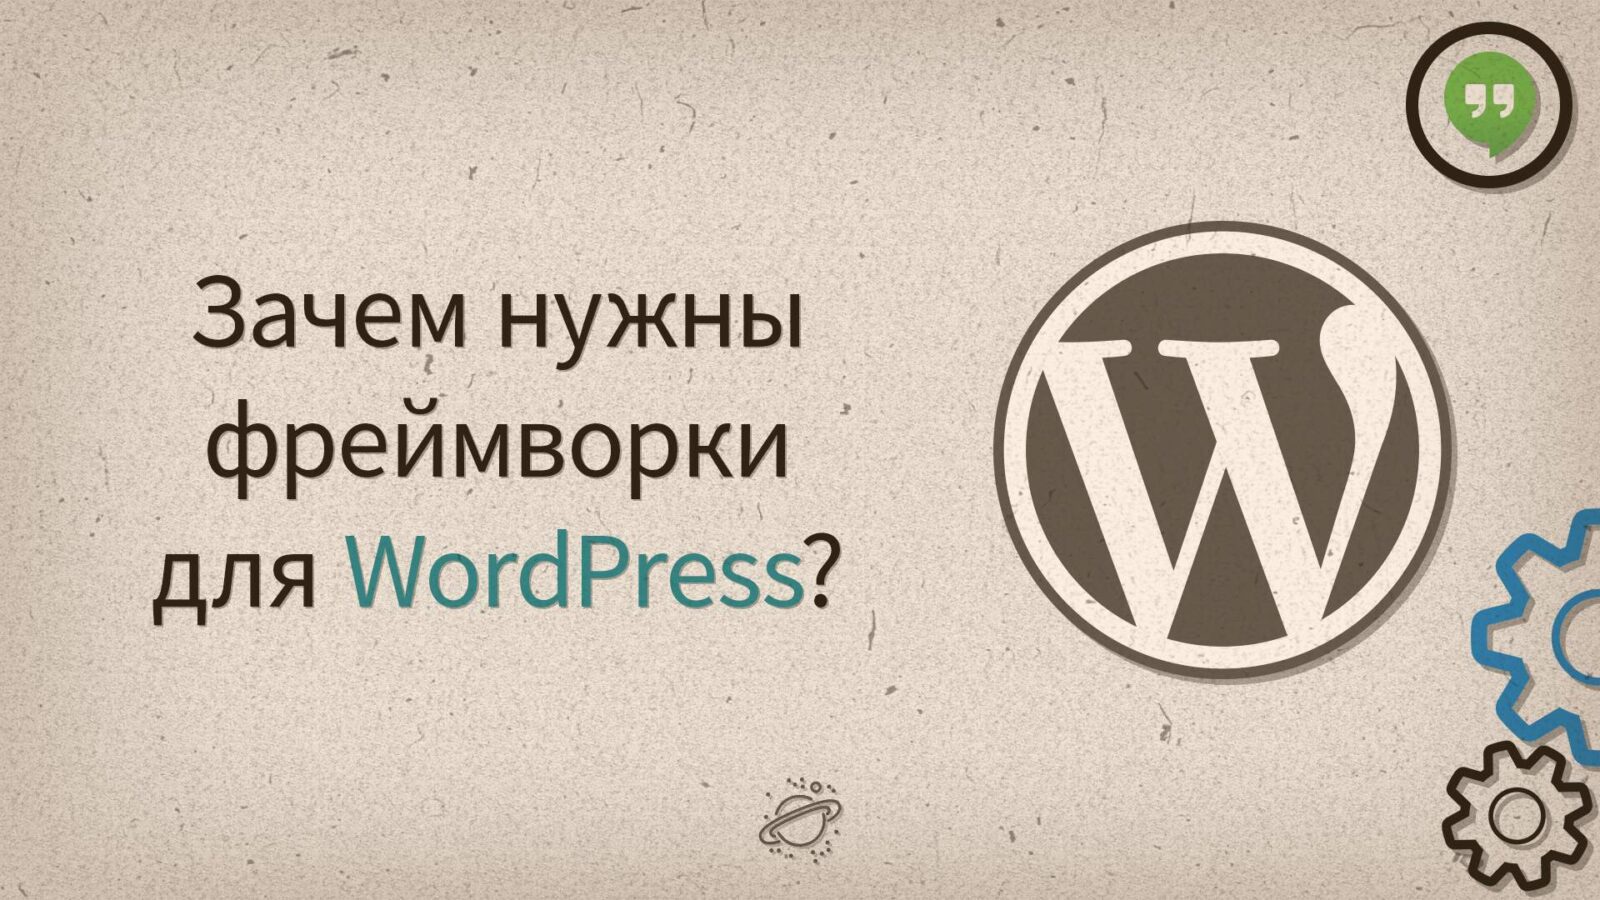 Зачем нужны фреймворки для WordPress?